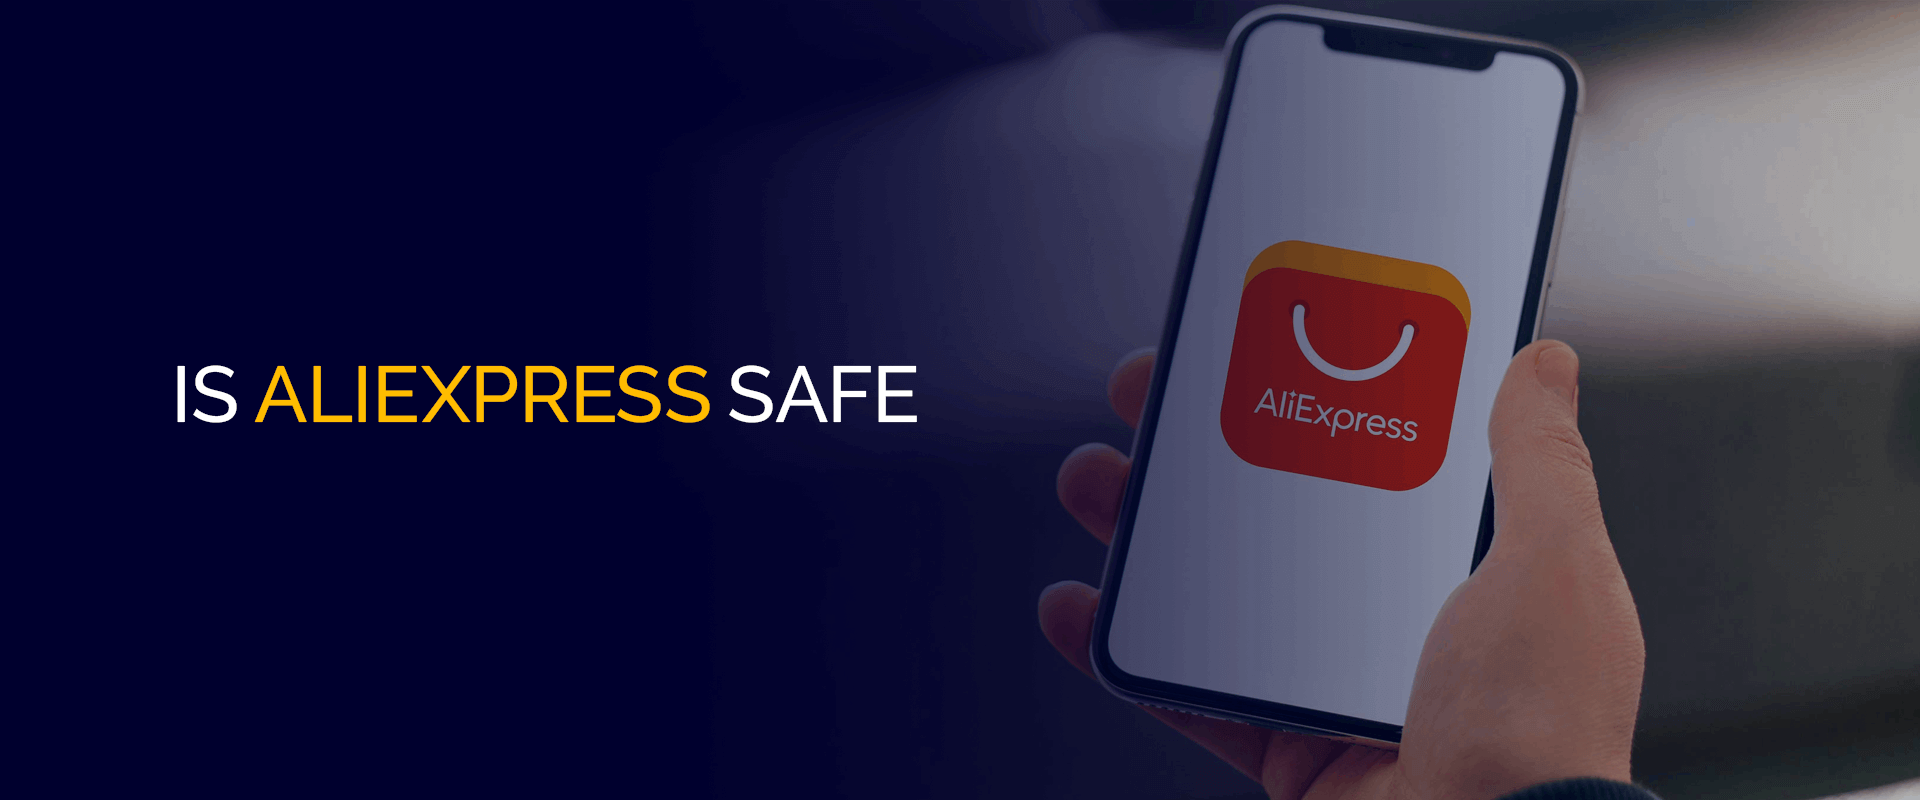 O AliExpress é seguro? Um guia completo para compras seguras!